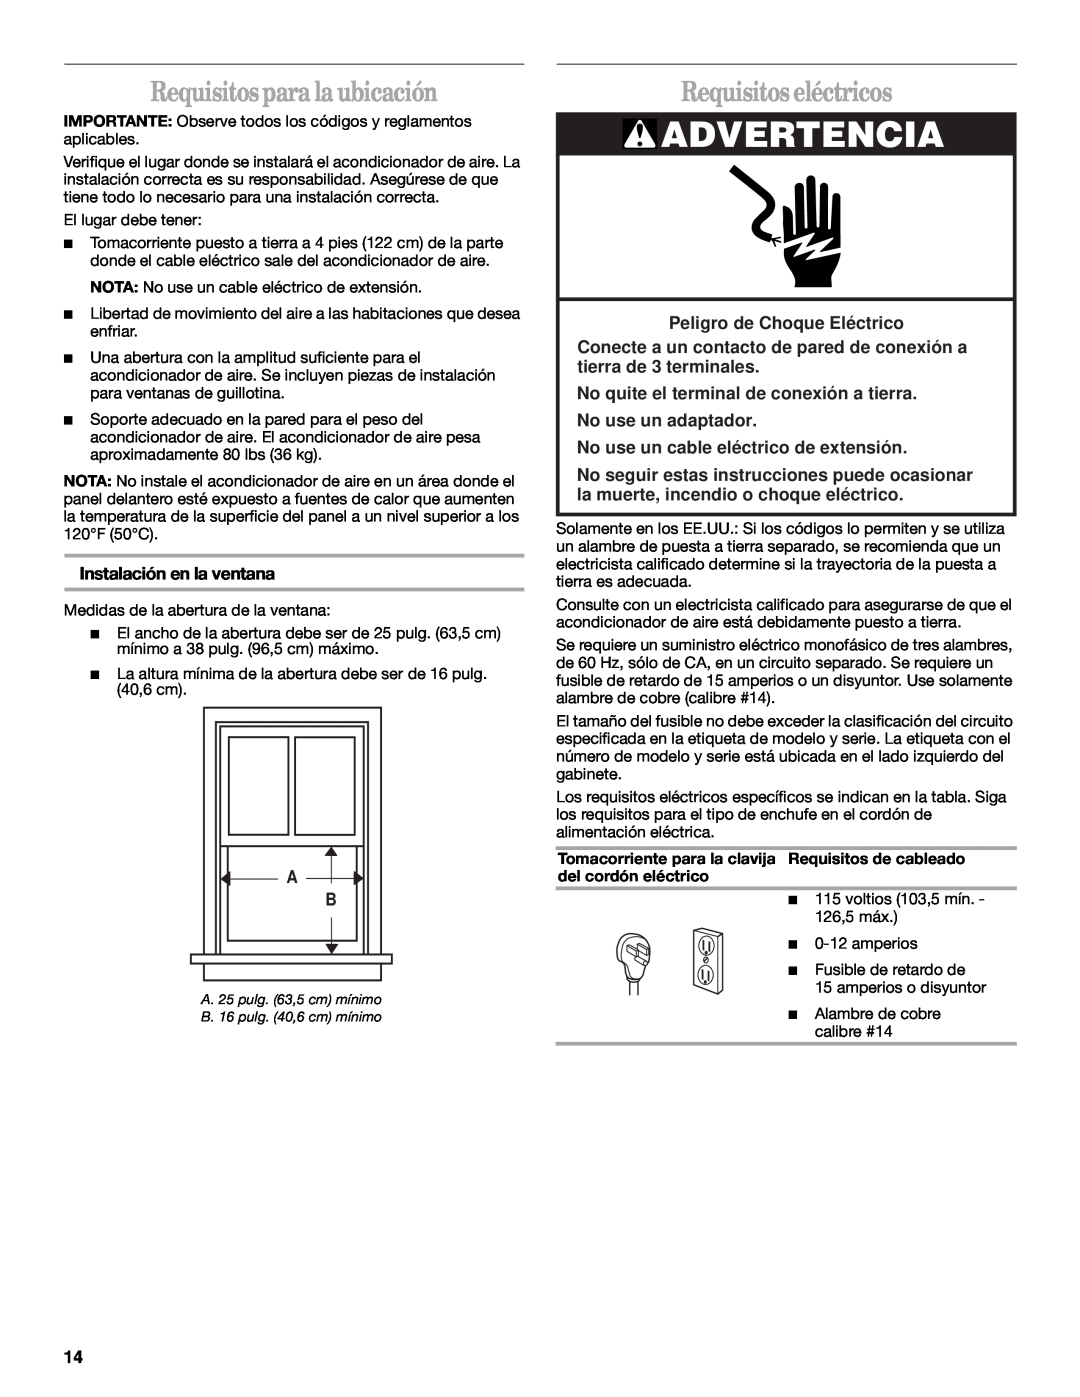 Whirlpool ACQ062MP0 manual Advertencia, Requisitos para la ubicación, Requisitos eléctricos, Instalación en la ventana 